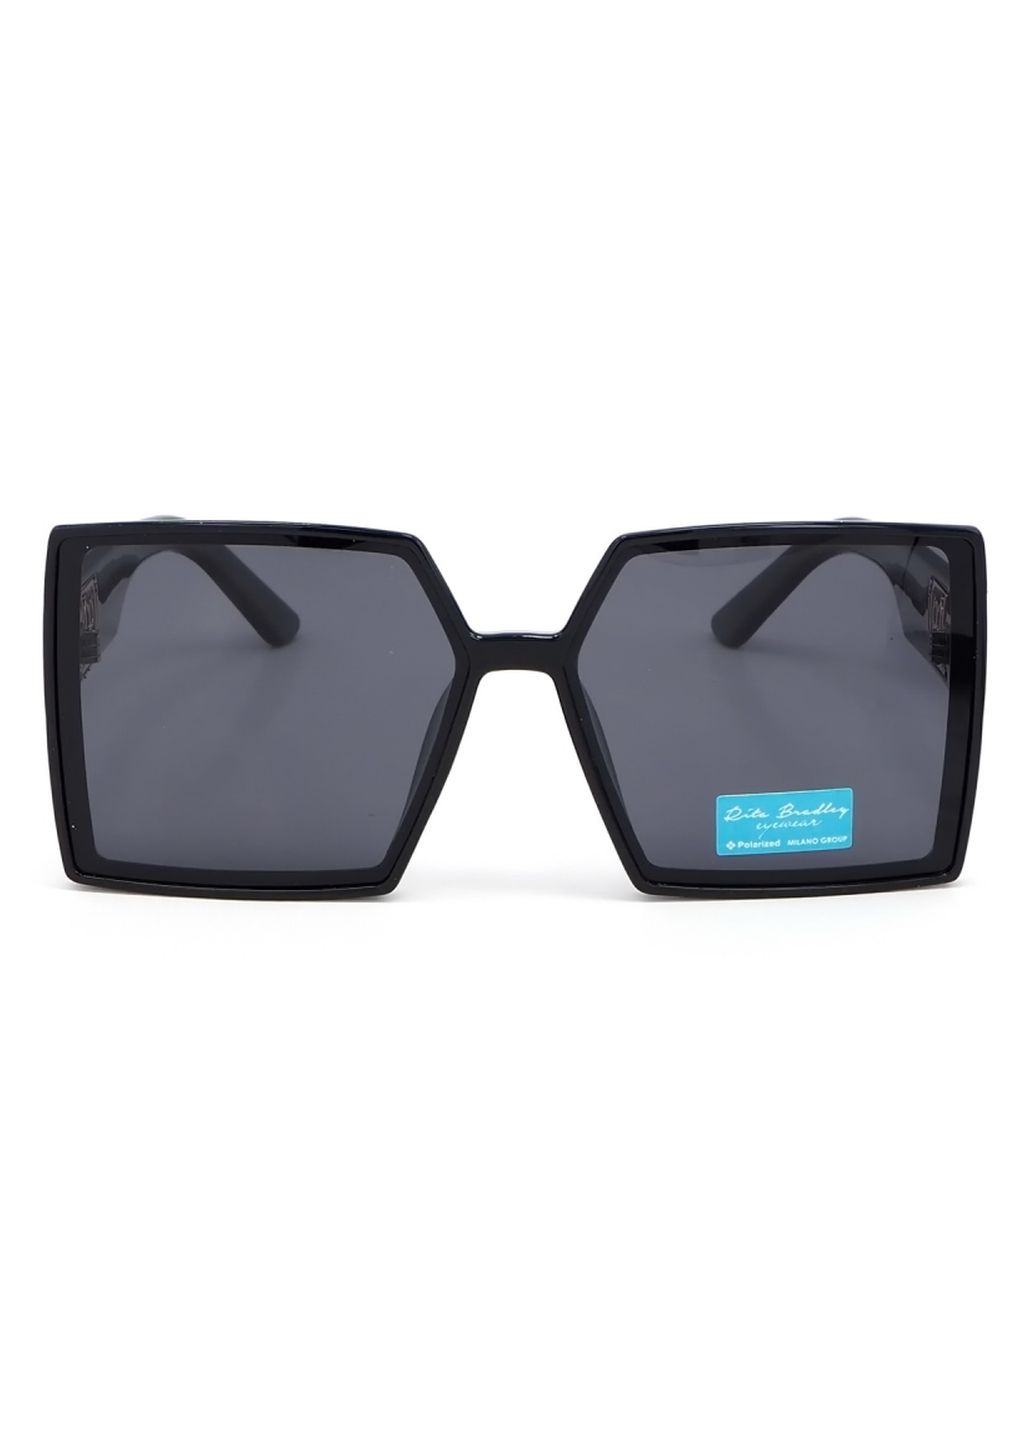 Купить Женские солнцезащитные очки Rita Bradley с поляризацией RB731 112077 в интернет-магазине